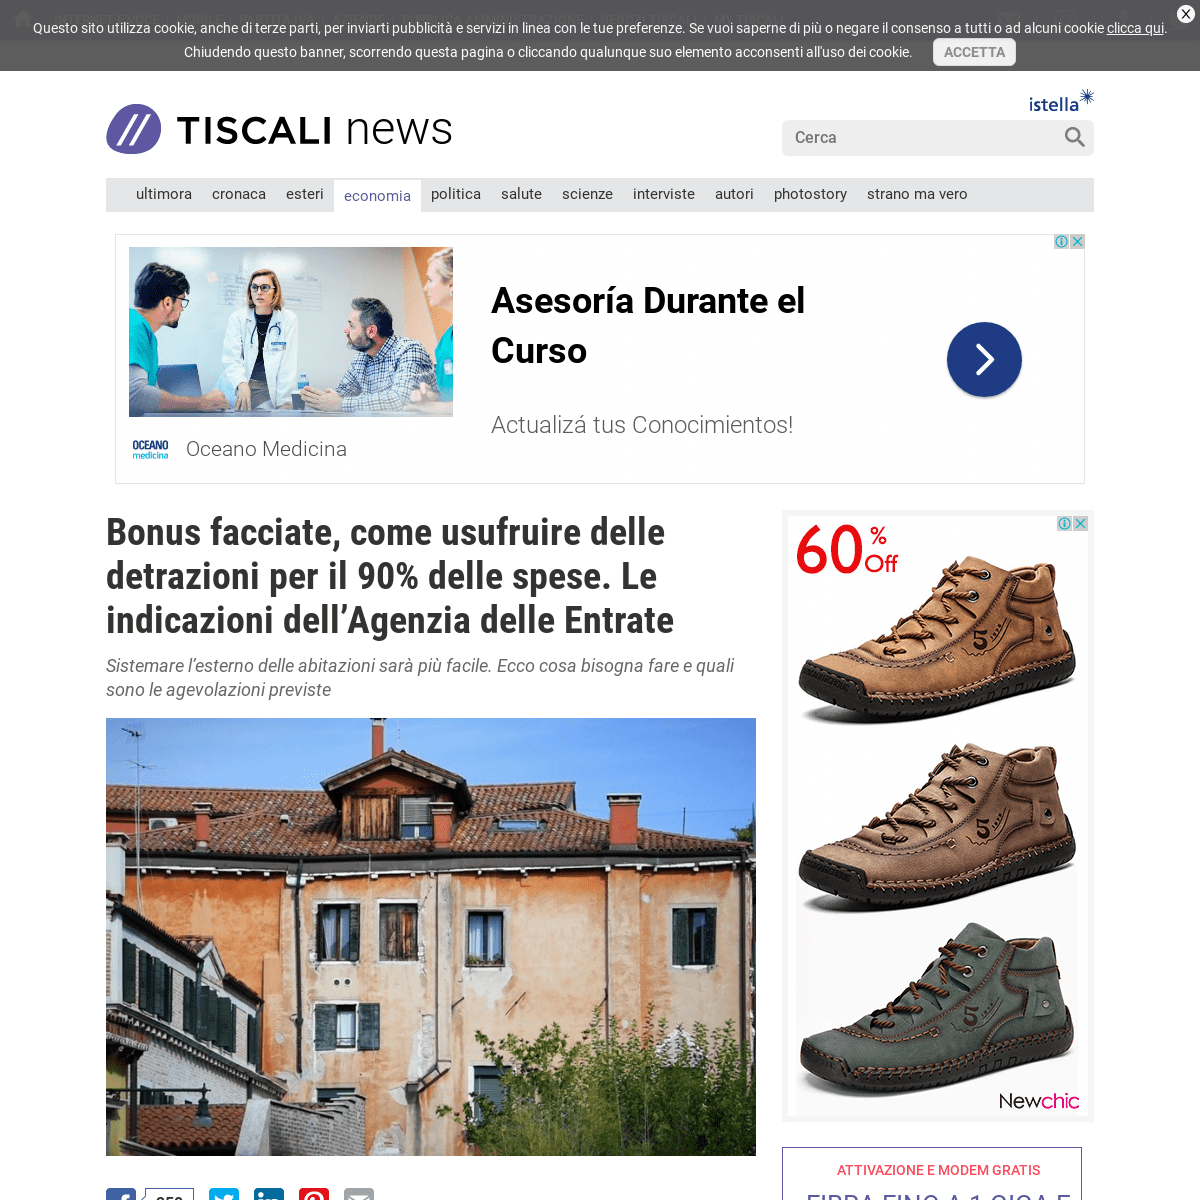 A complete backup of notizie.tiscali.it/economia/articoli/detrazioni-bonus-facciate/